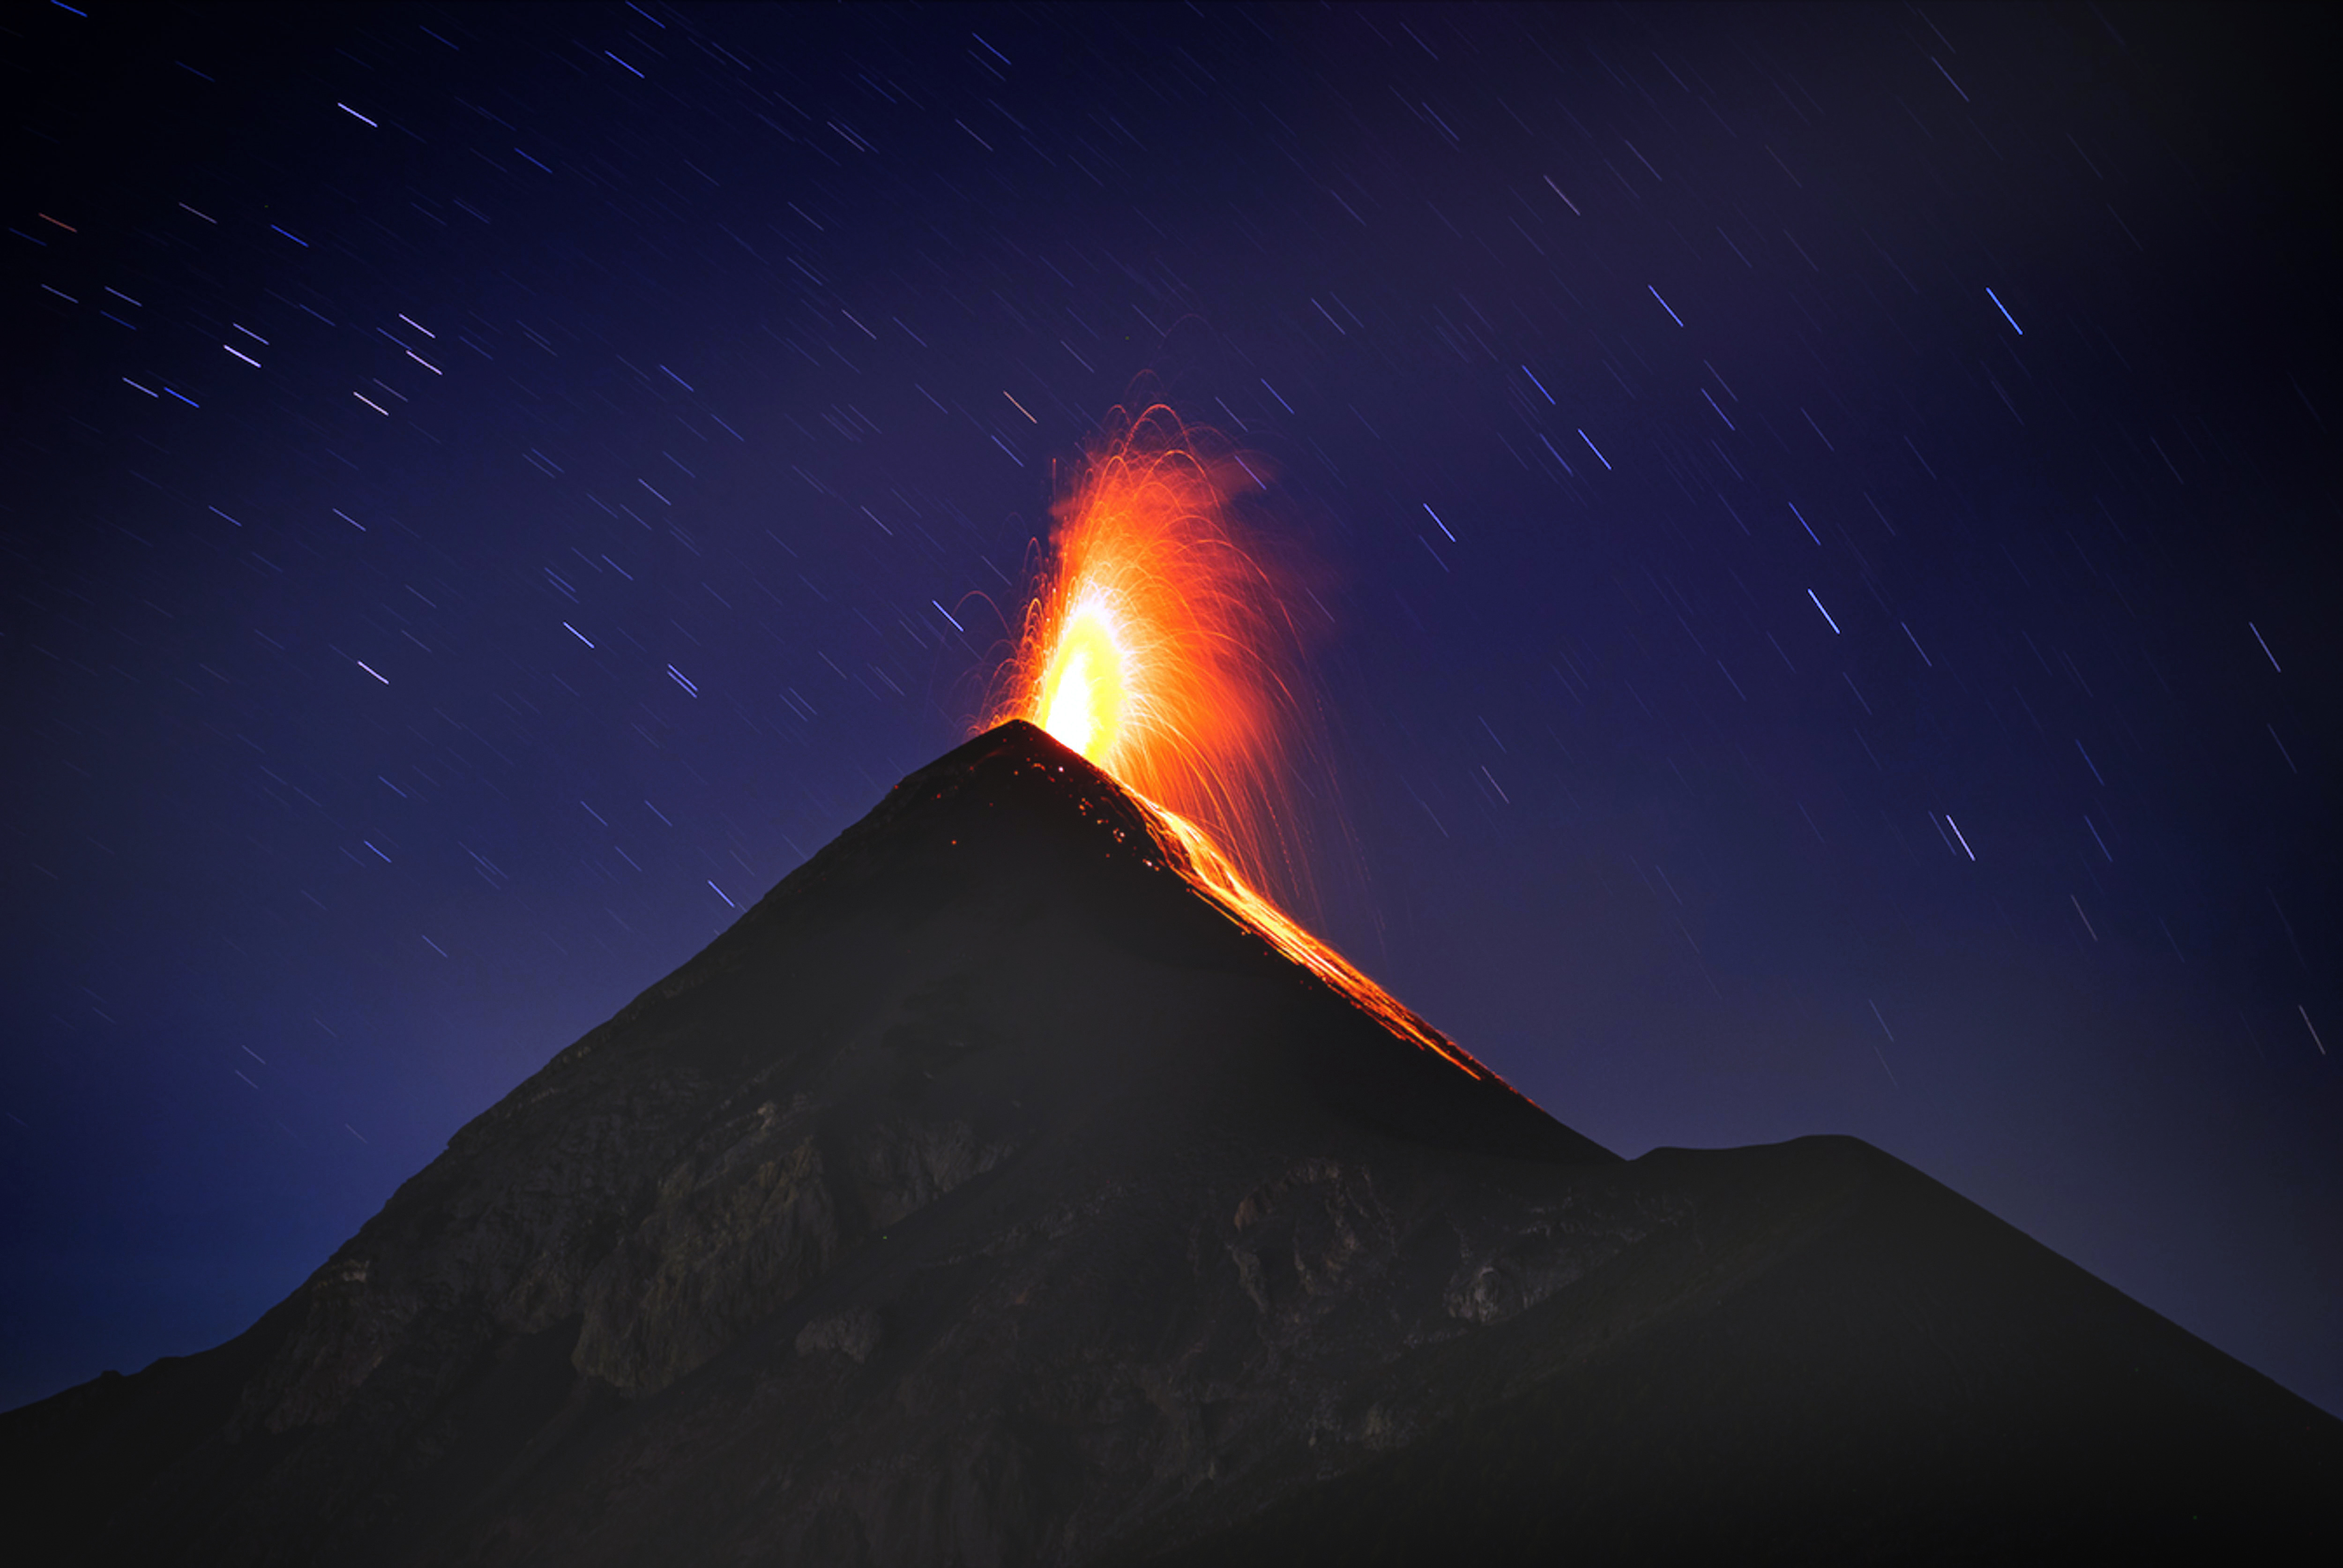 震撼!摄影师近距离拍摄富埃戈火山喷发瞬间